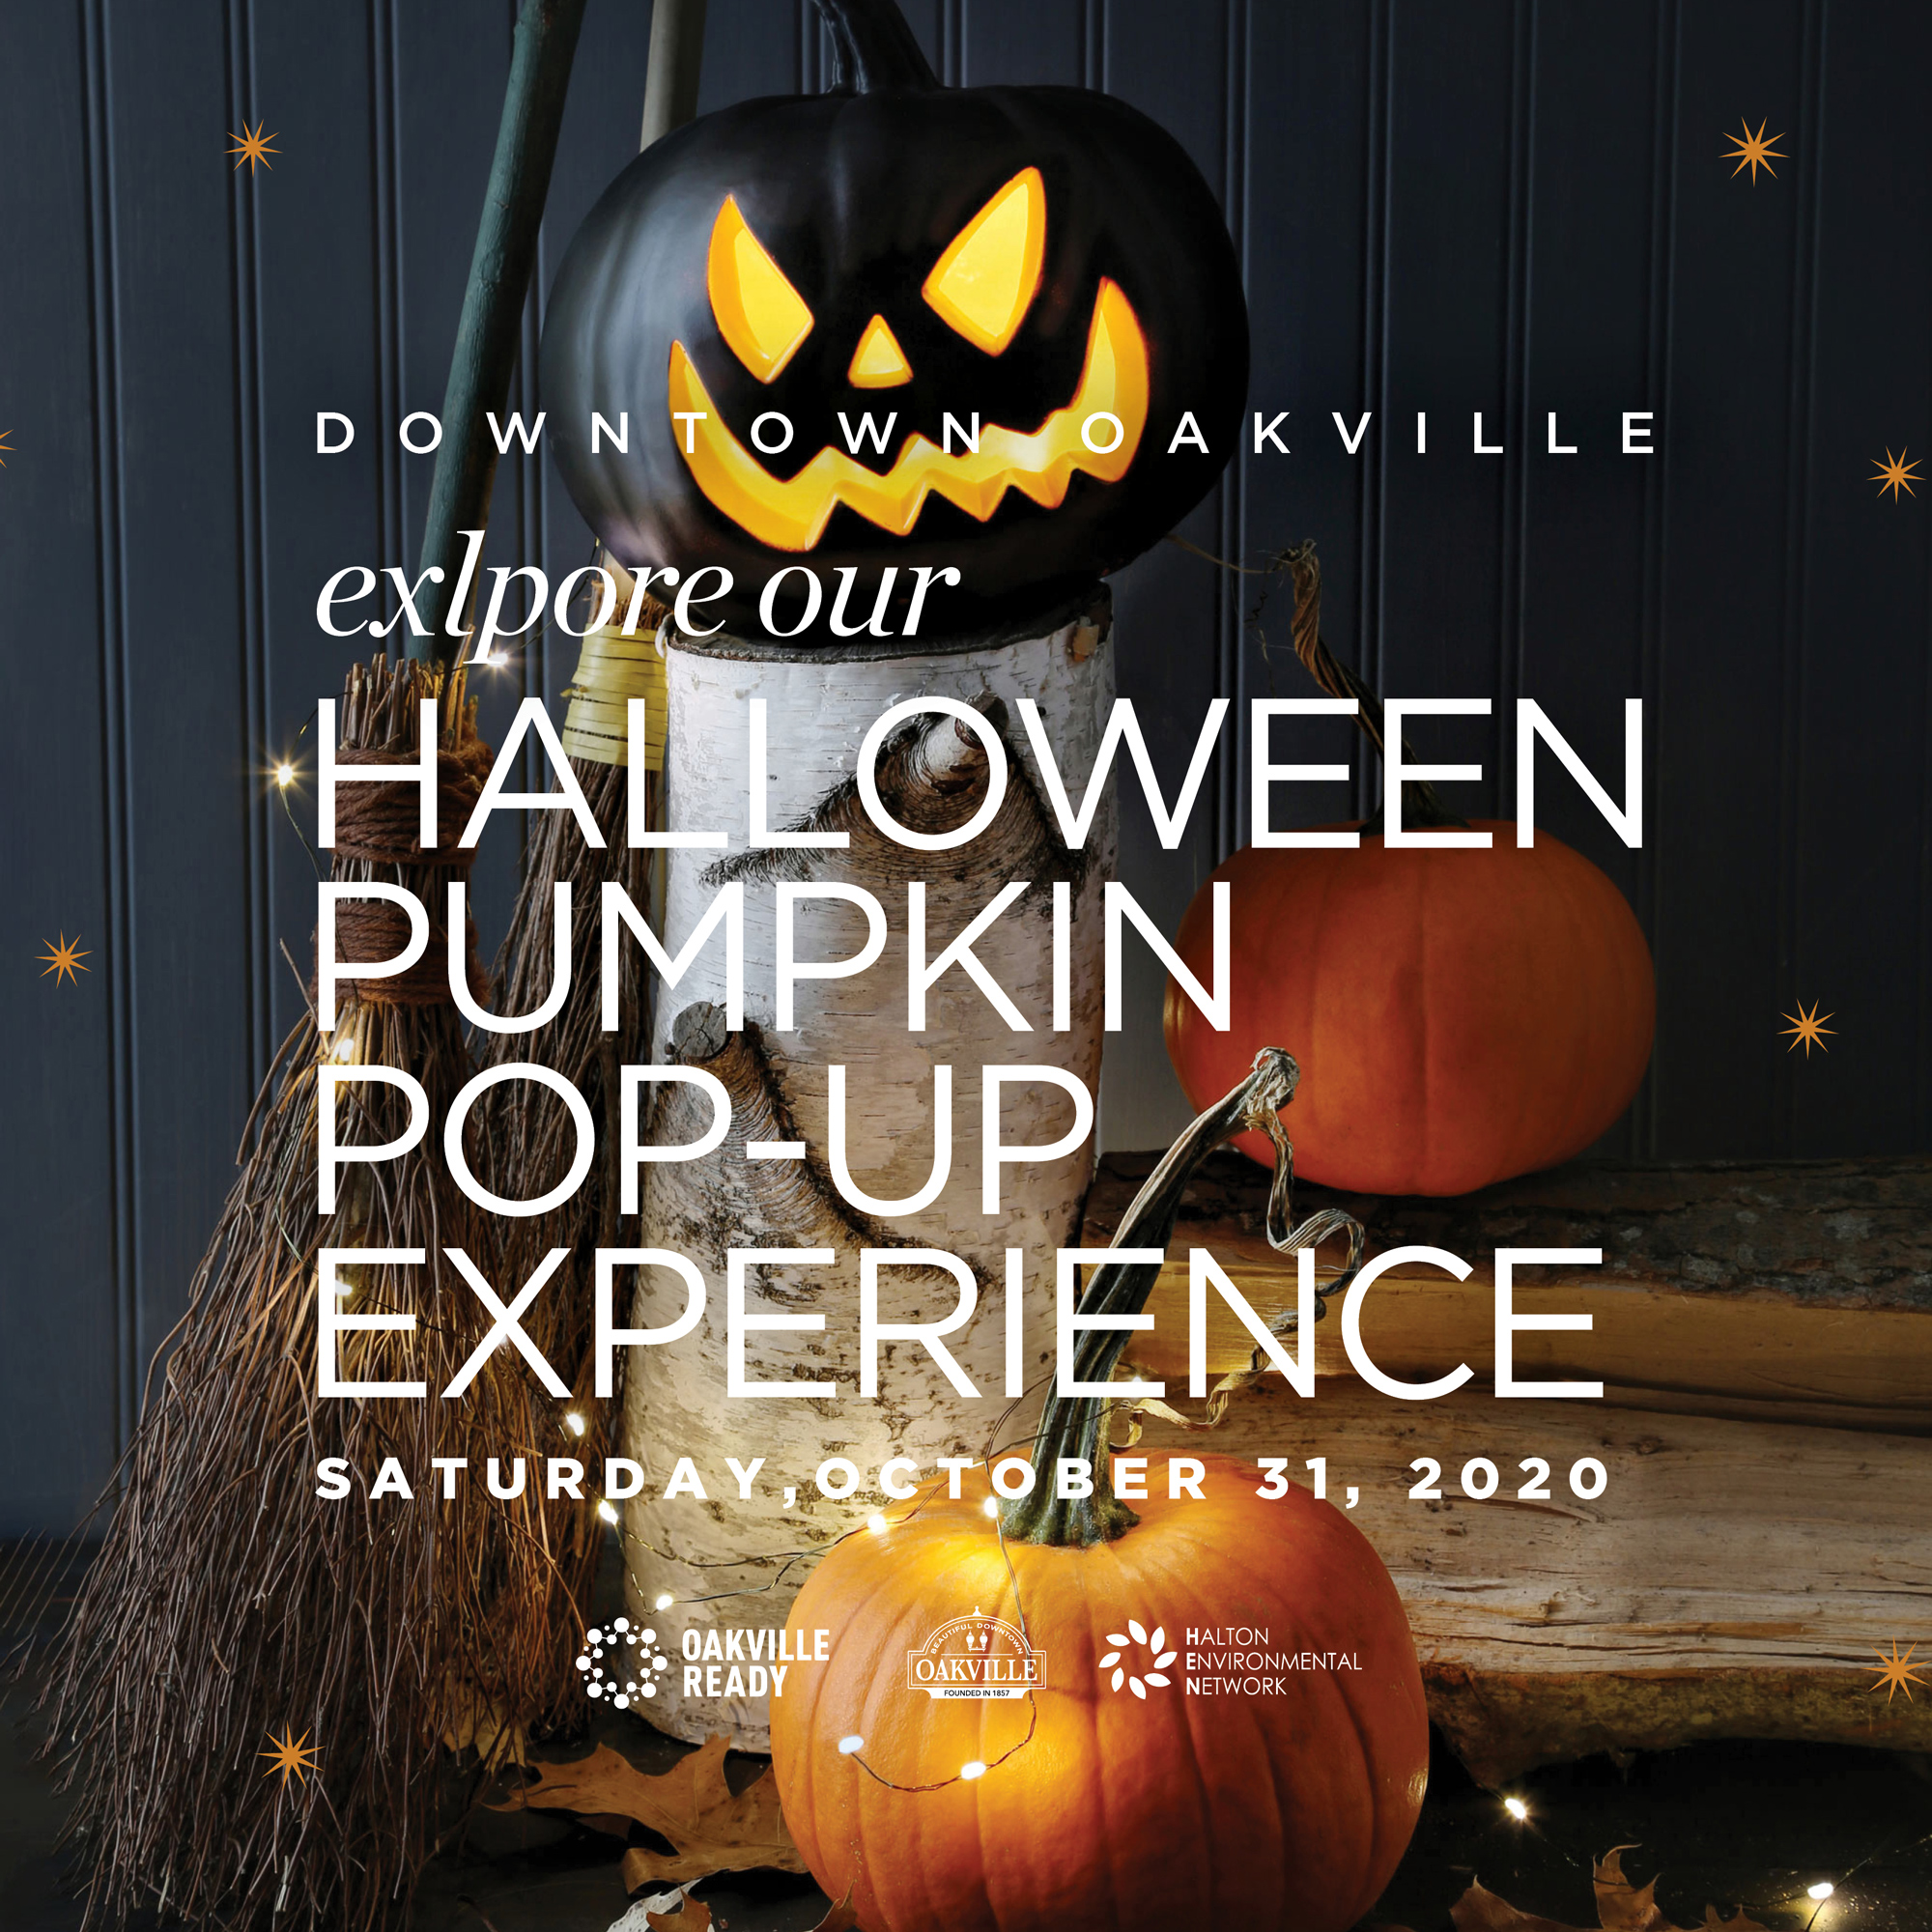 Downtown Oakville Halloween Pumpkin Pop-up